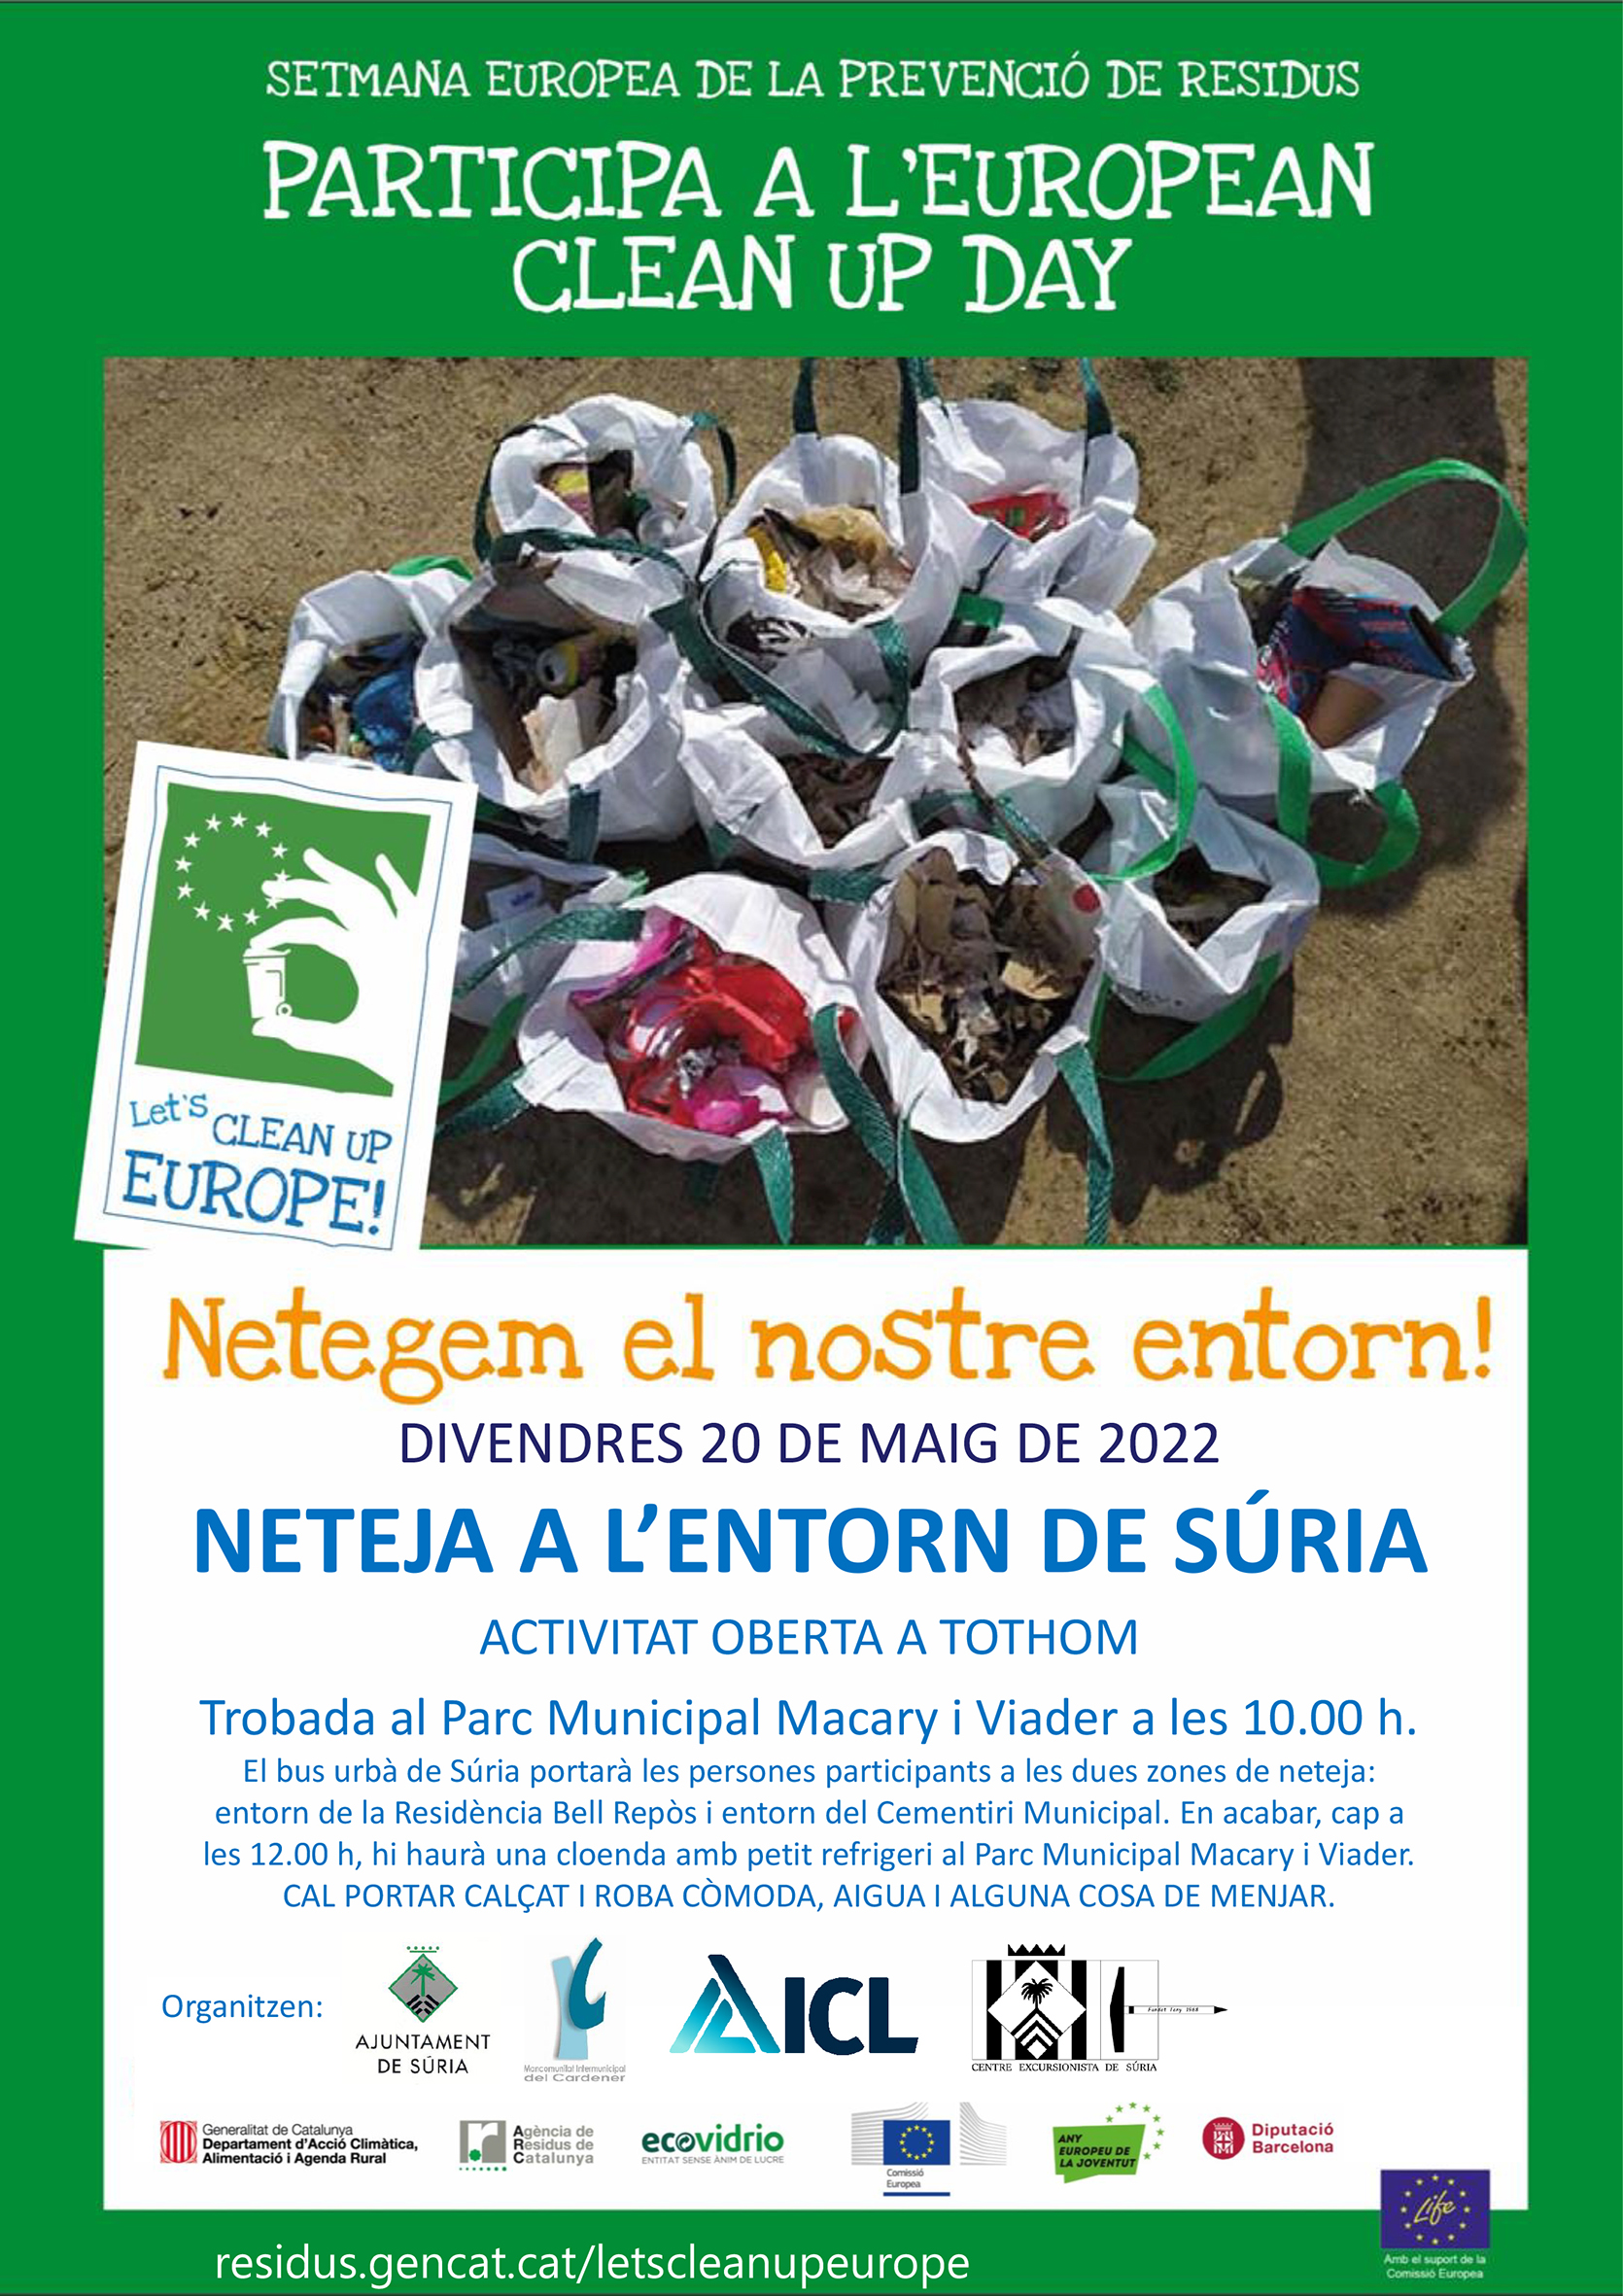 Cartell de l'acció de neteja oberta a tothom, dins de la Setmana Europea de la Prevenció de Residus - Divendres 20 de maig.